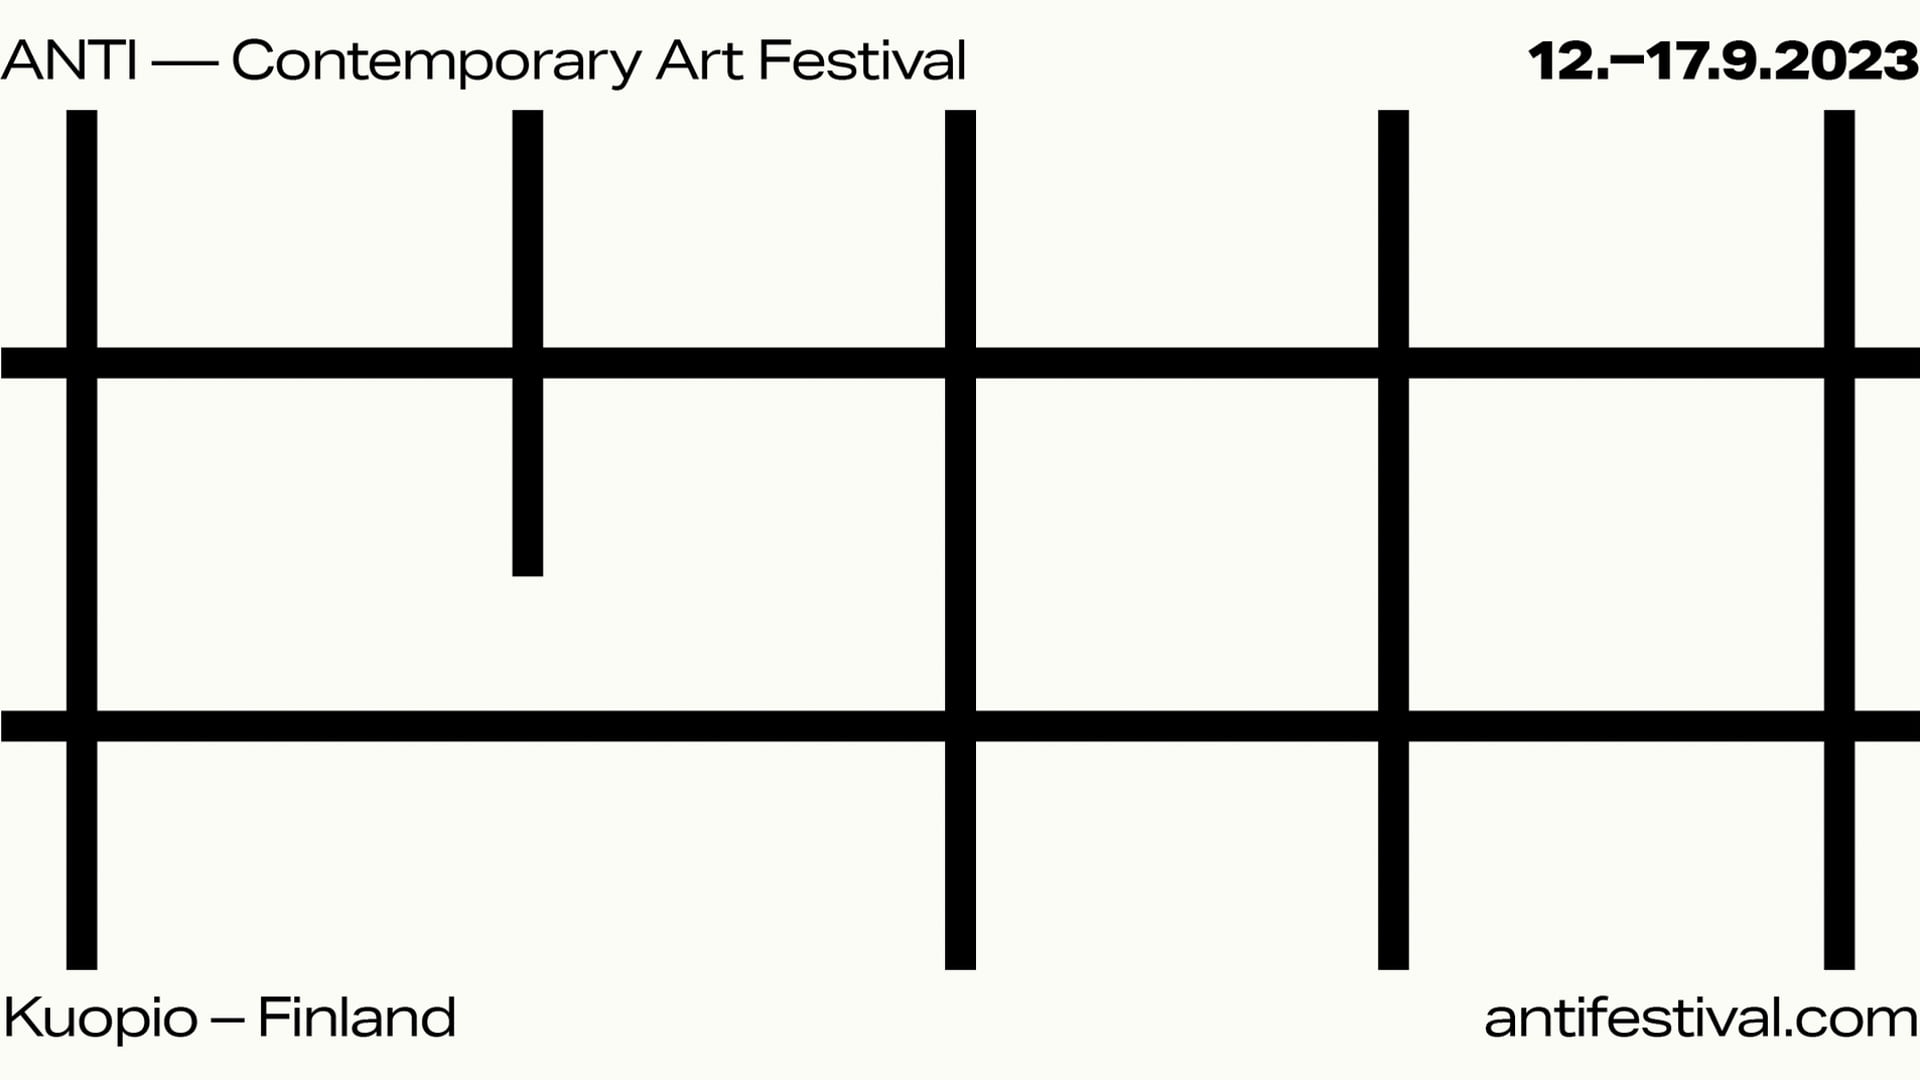 ANTI - Contemporary Art Festival 2023